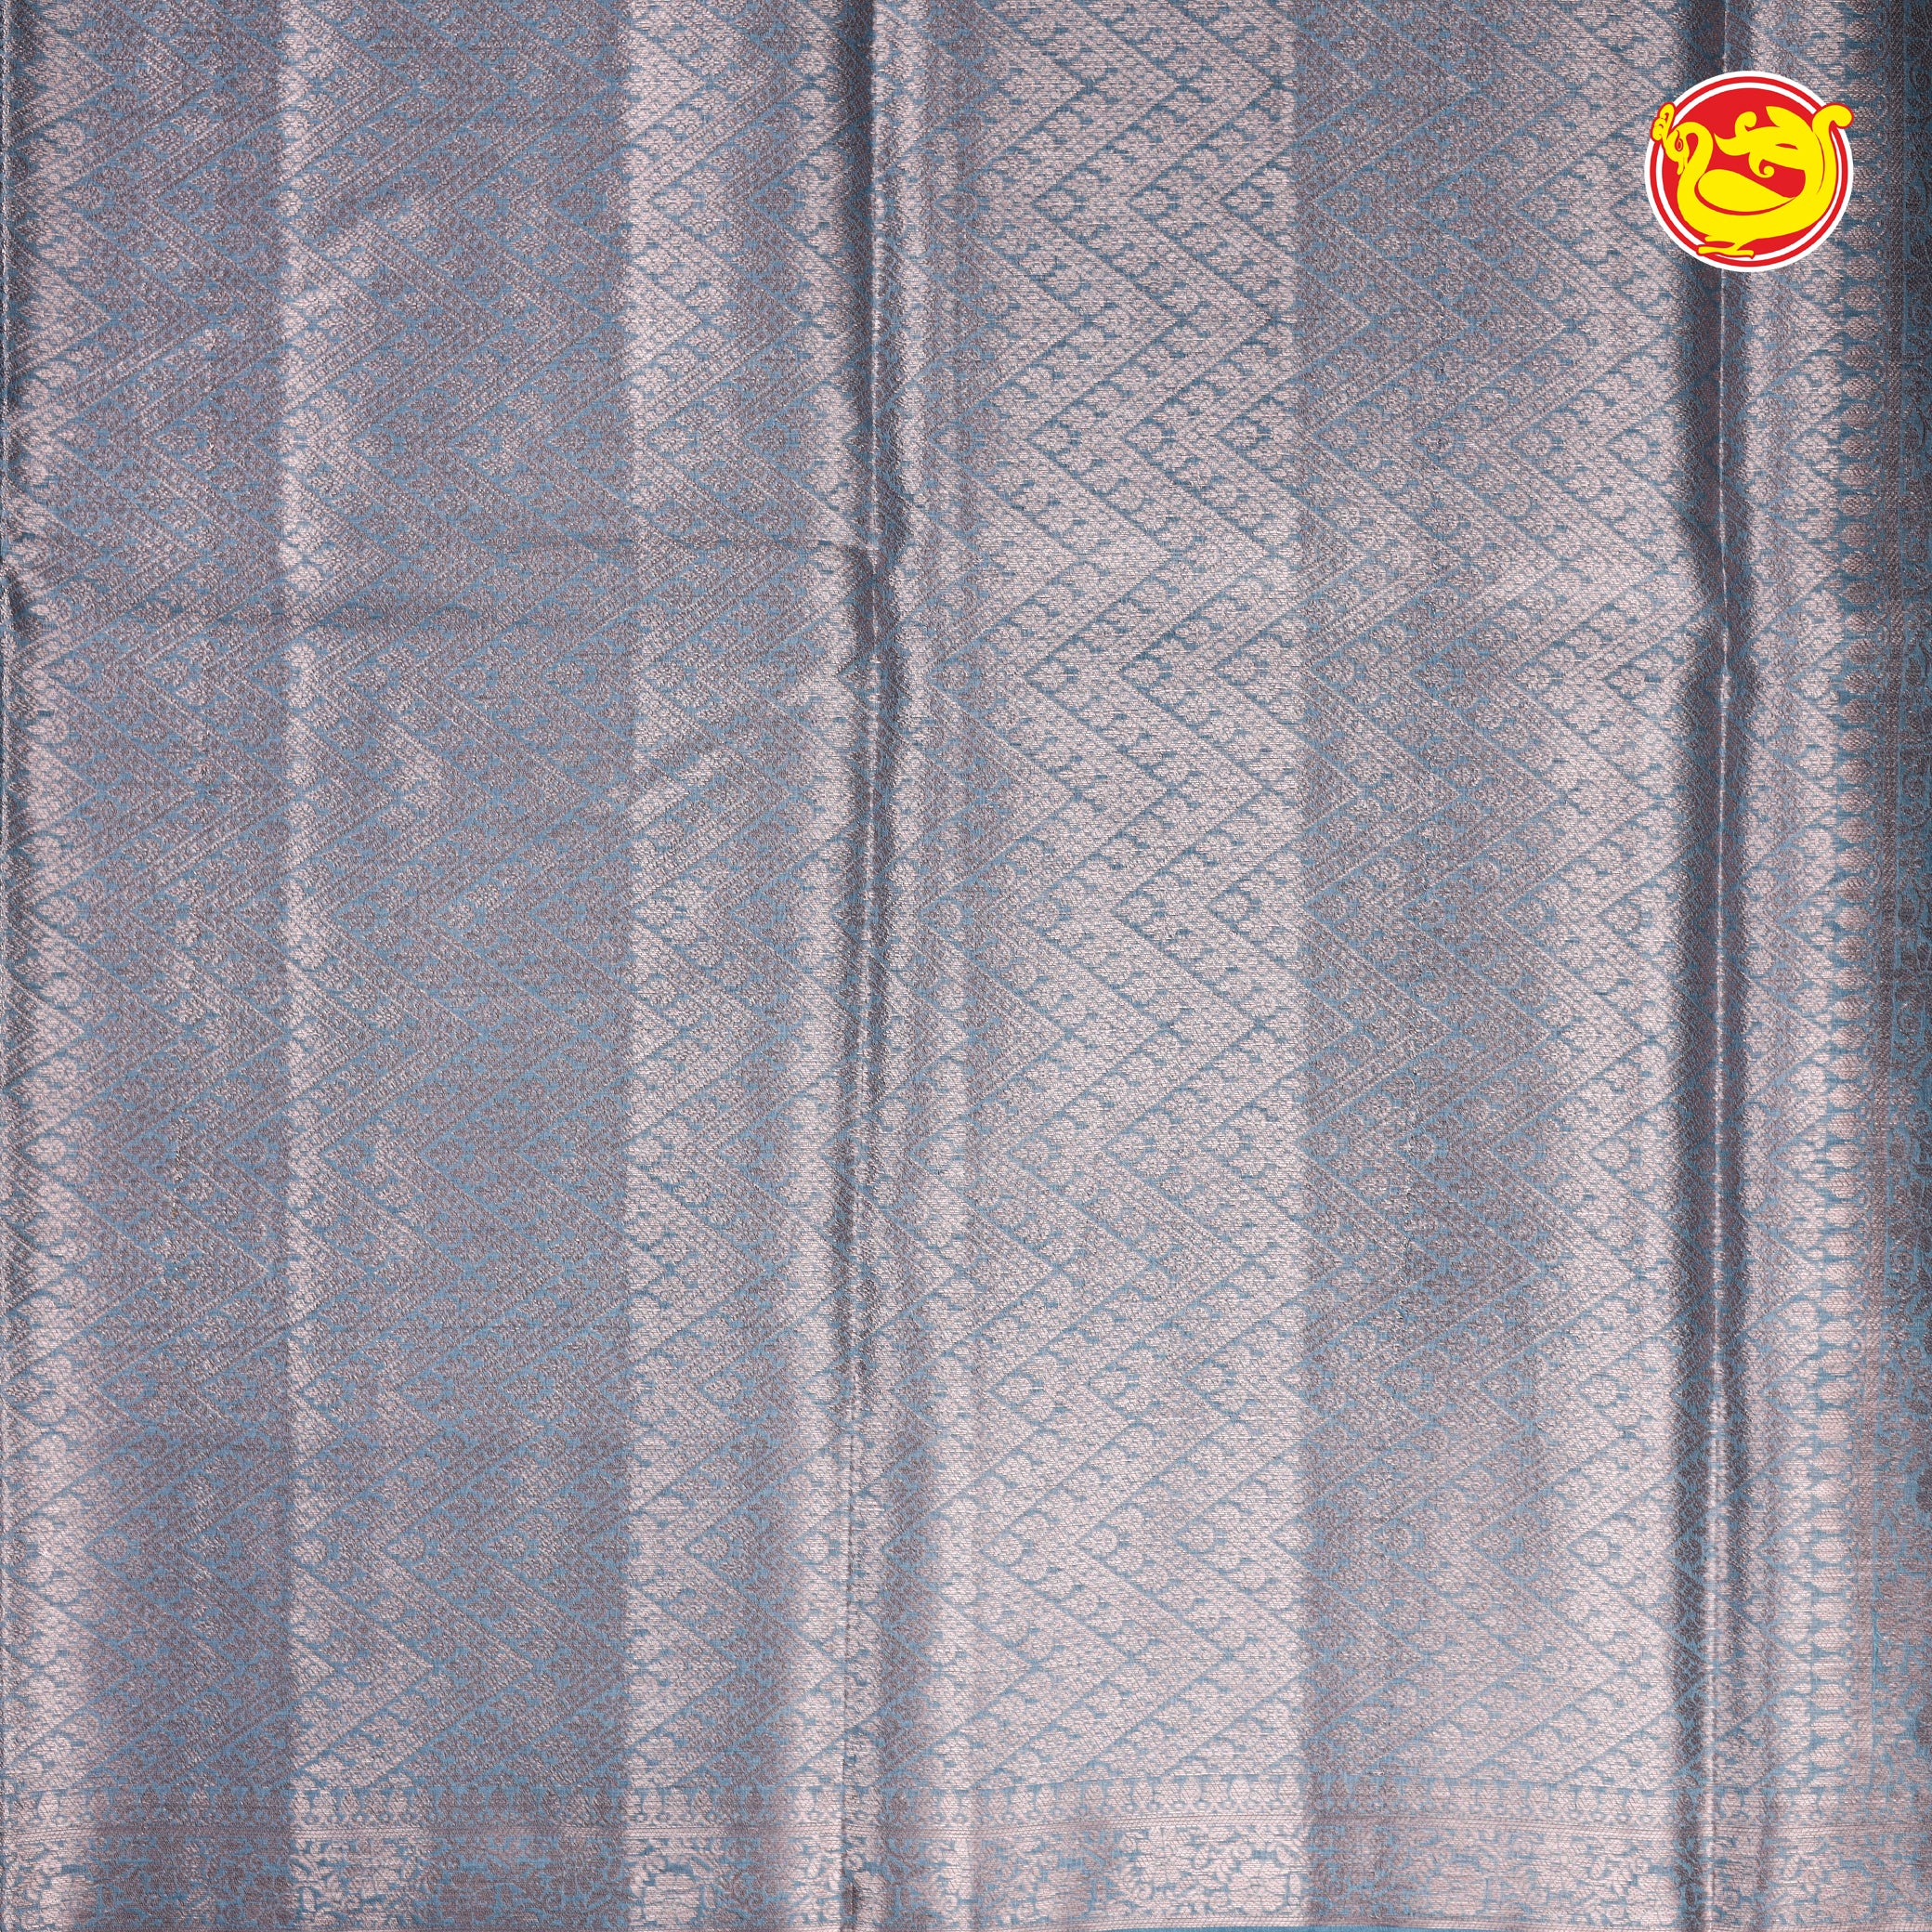 Bluish grey tussar silk saree with silk re zari buttas